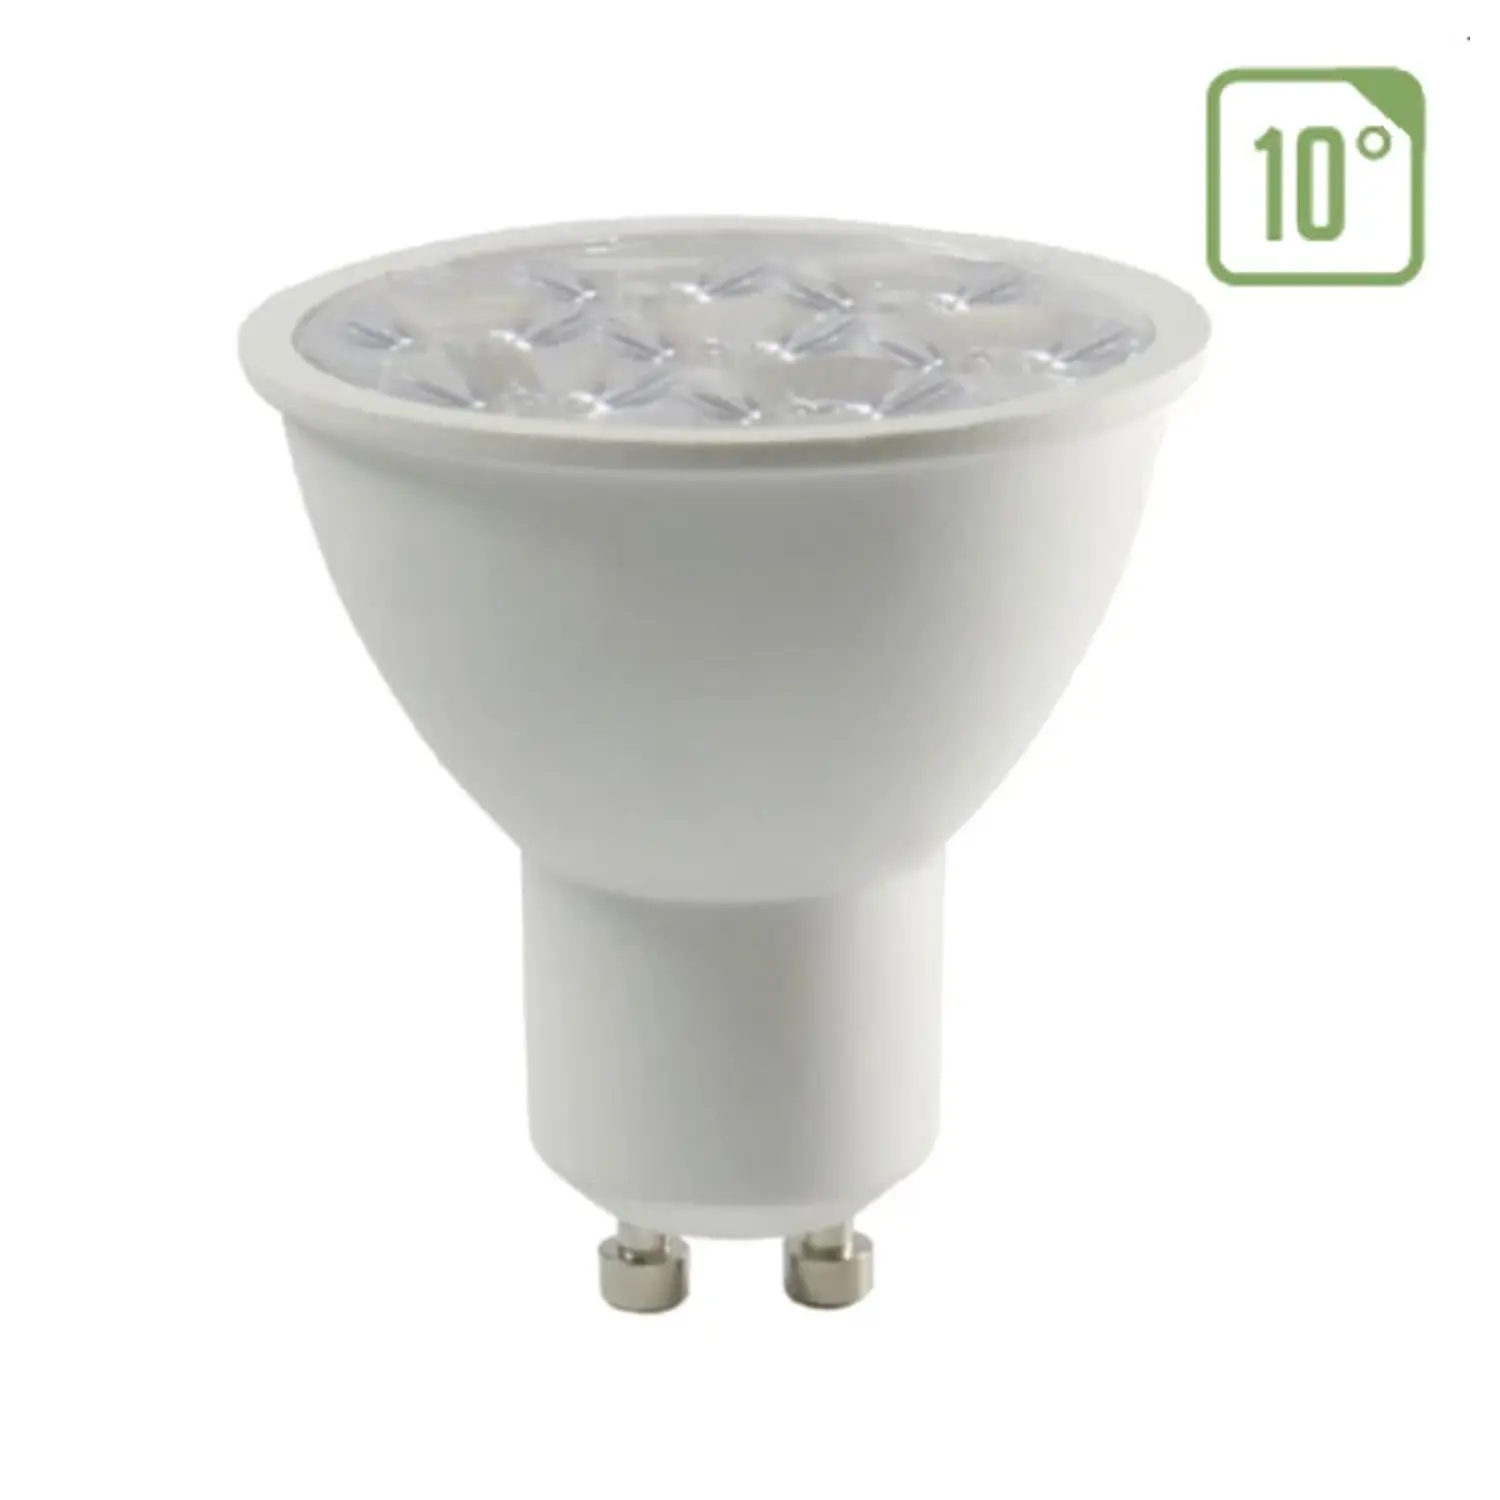 immagine del prodotto lampadina led chip samsung lampada faretto 10° angolo stretto gu10 6 watt bianco naturale